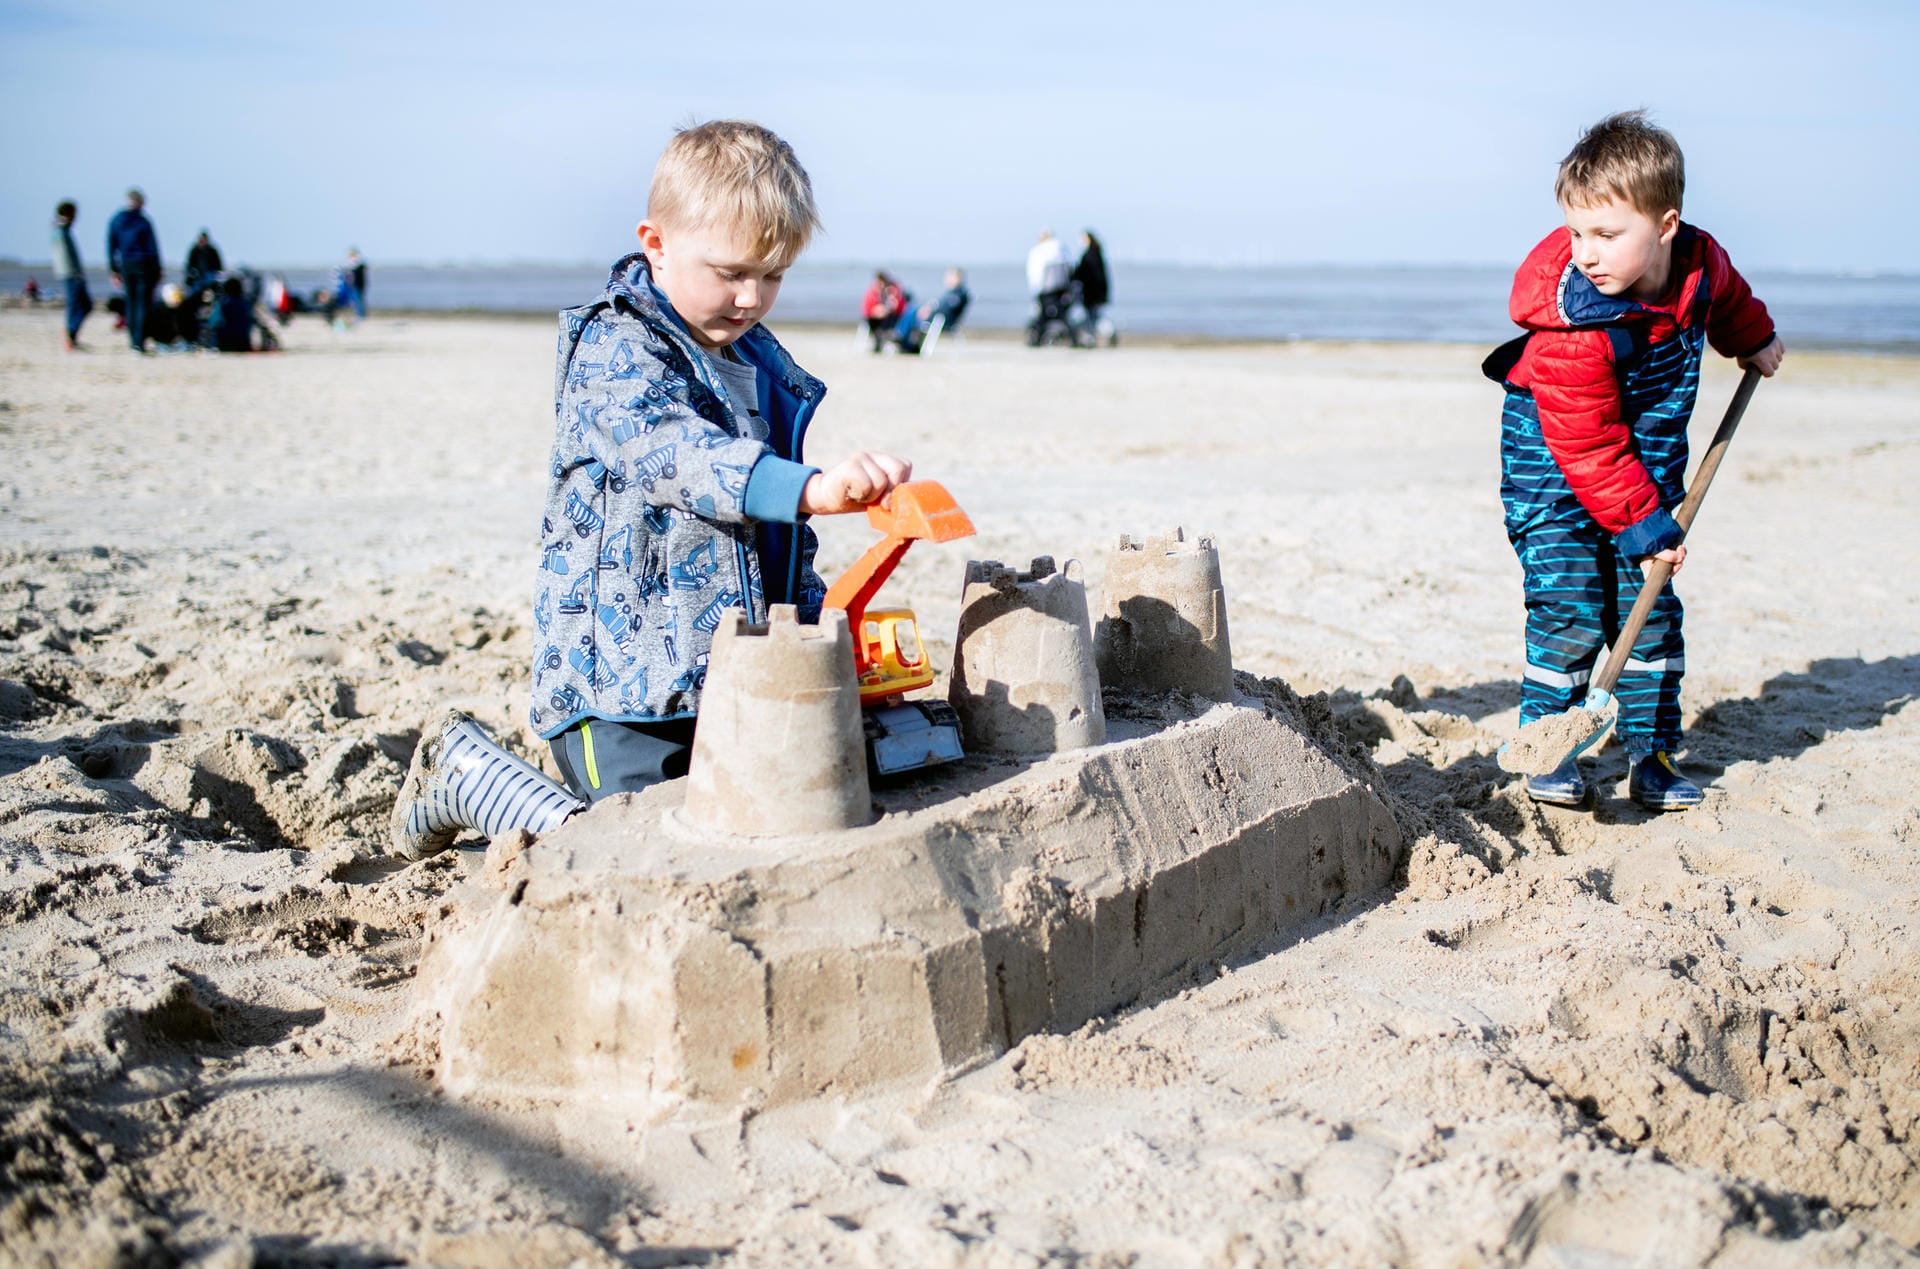 Dangast in Niedersachsen: Die Geschwister Noah (links) und Emil bauen bei sonnigem Wetter eine Sandburg am Strand.